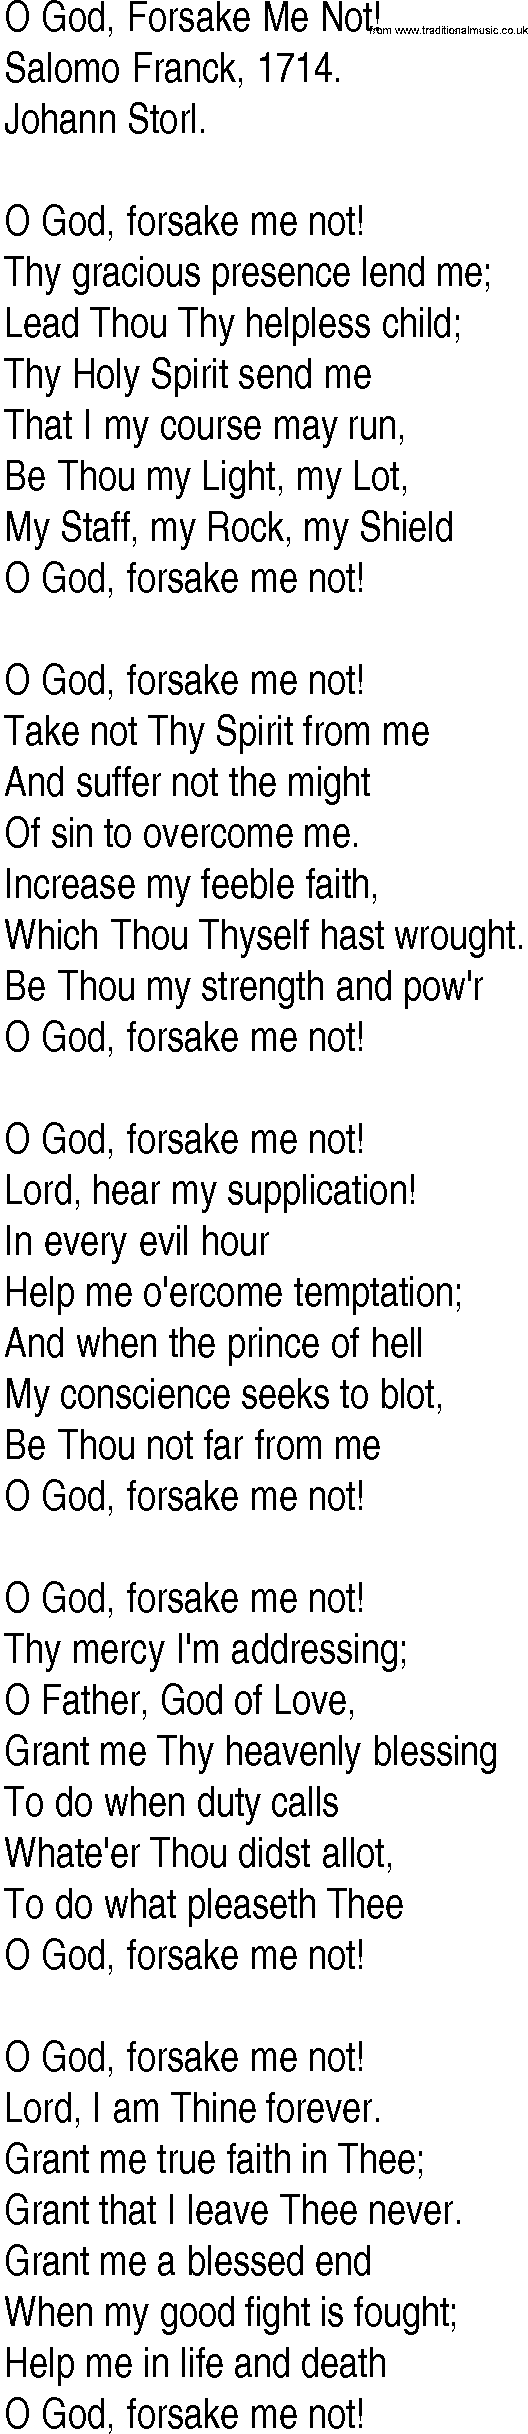 Hymn and Gospel Song: O God, Forsake Me Not! by Salomo Franck lyrics